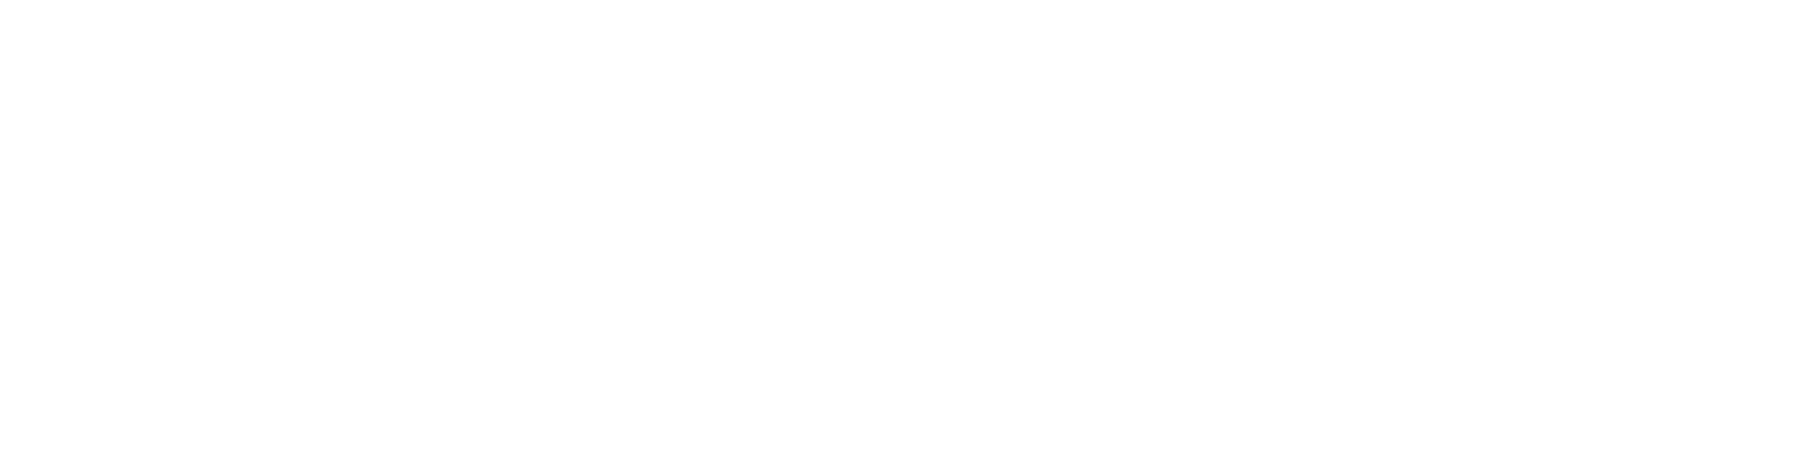 LBH_ExpressCare_rev_logo (4)